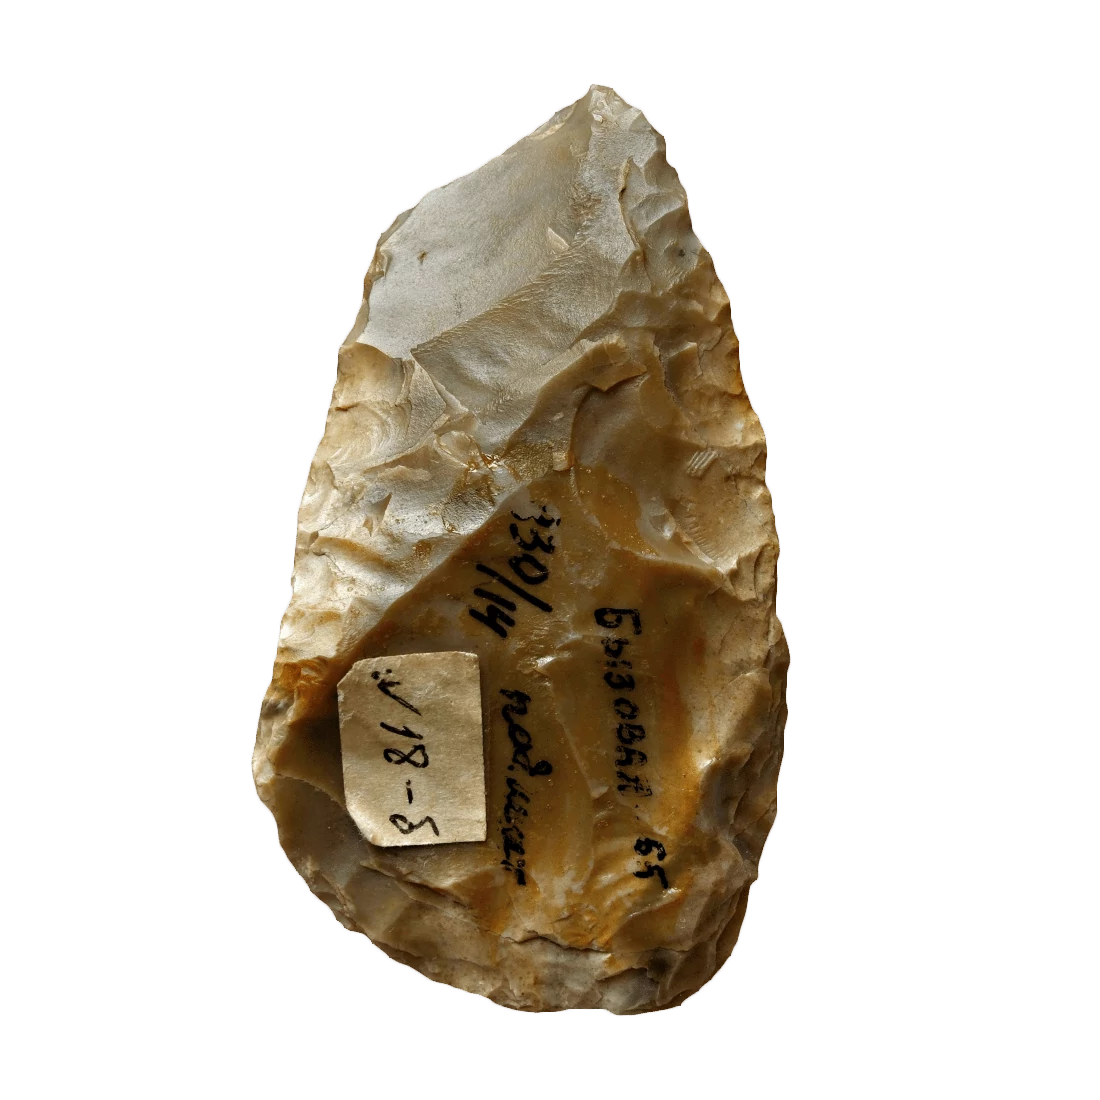 Keilmesser Stone Tool, Upper Paleolithic